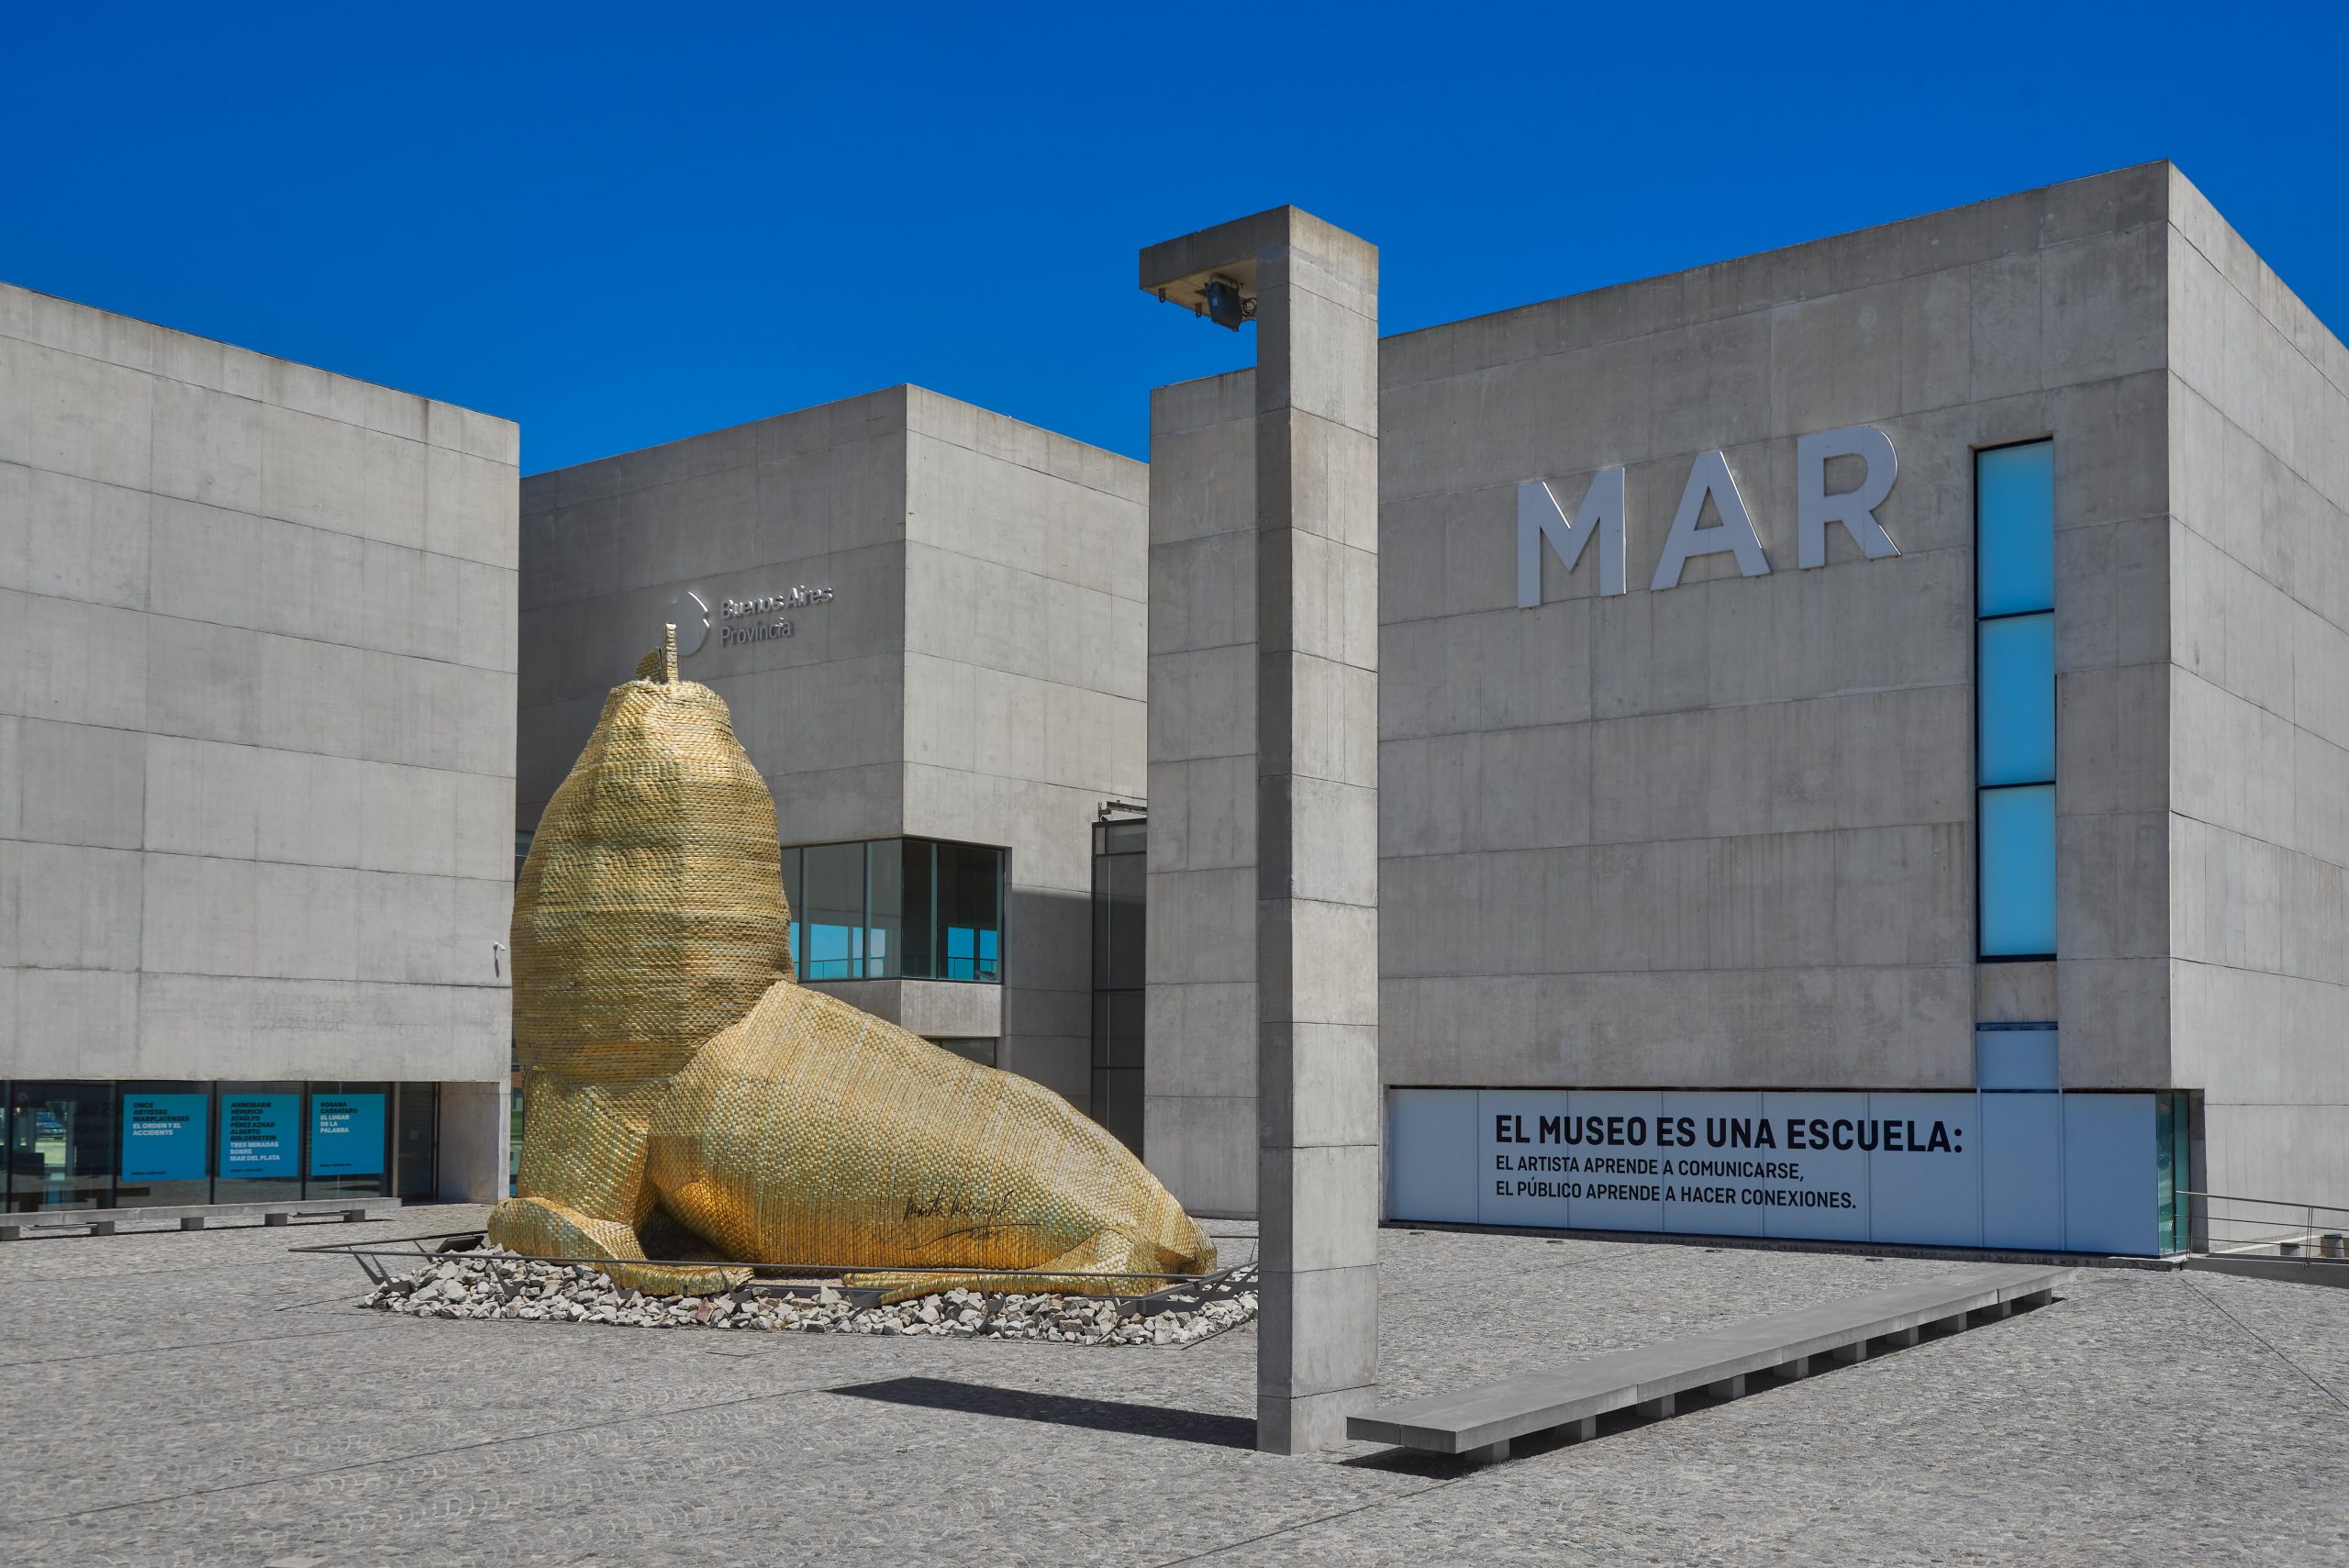 El Museo Mar con propuestas al aire libre las 24 horas